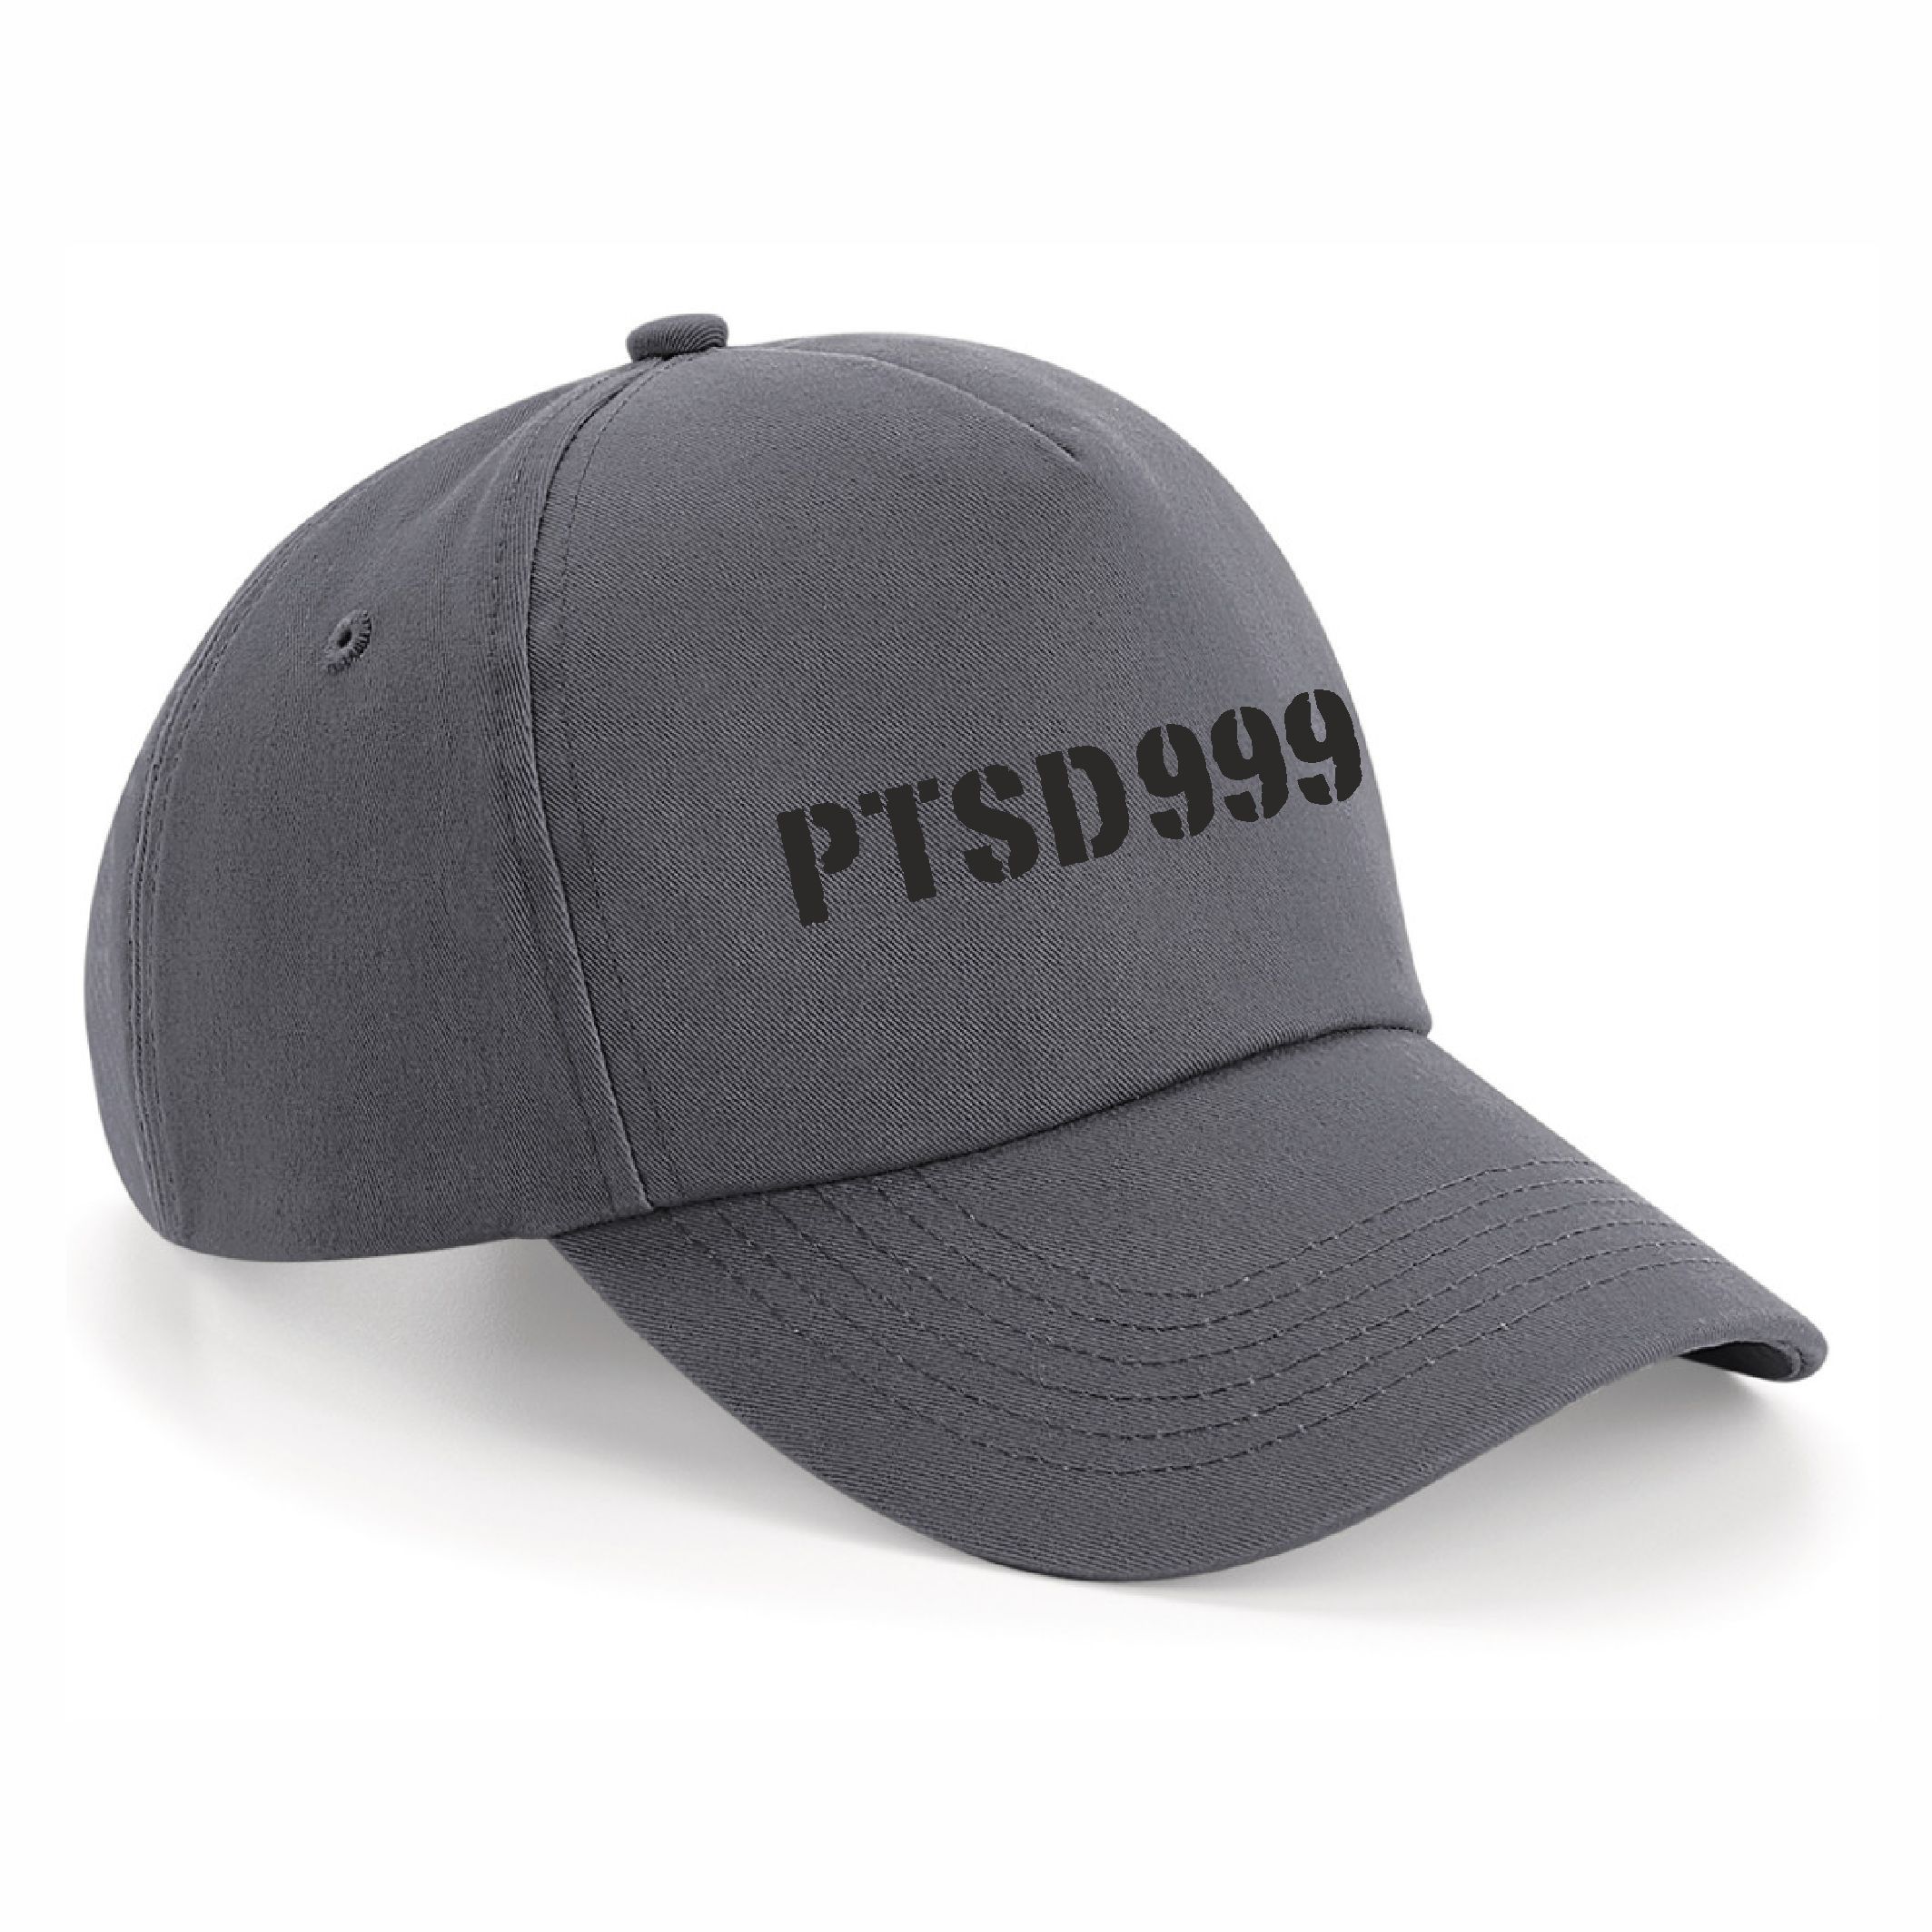 PTSD999- Black Dog Cap